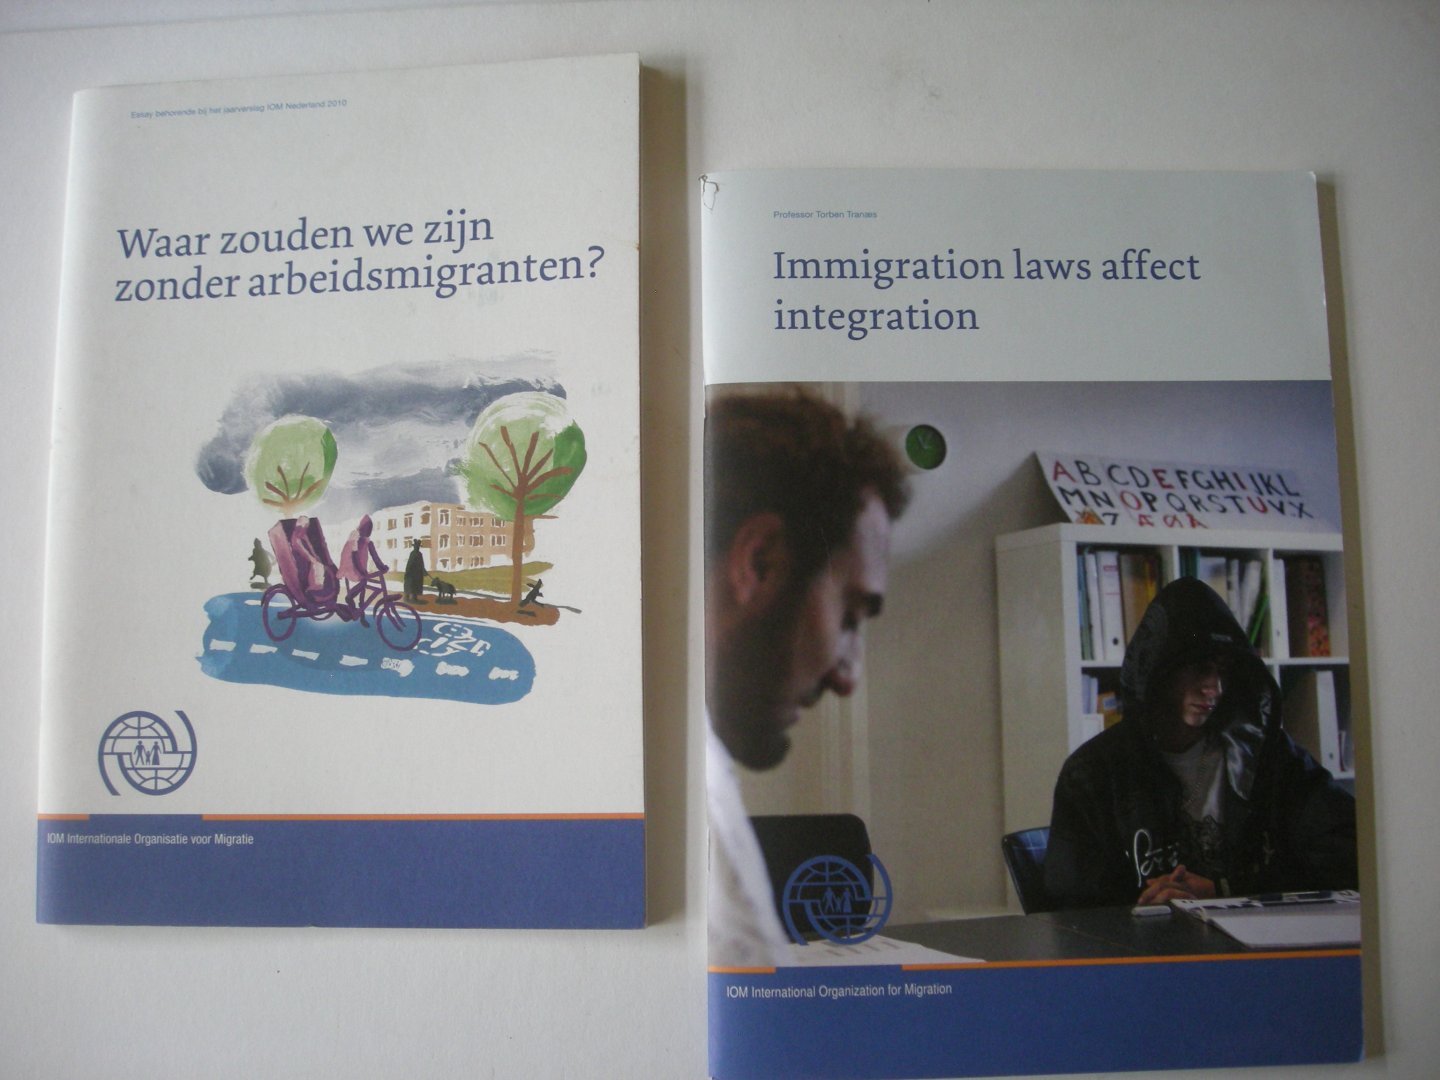 Santing, F. en Tranes, T. - Waar zouden we zijn zonder arbeidsmigranten? Een journalistiek essay over arbeidsmigratie / 2.Immigration laws affect integration.